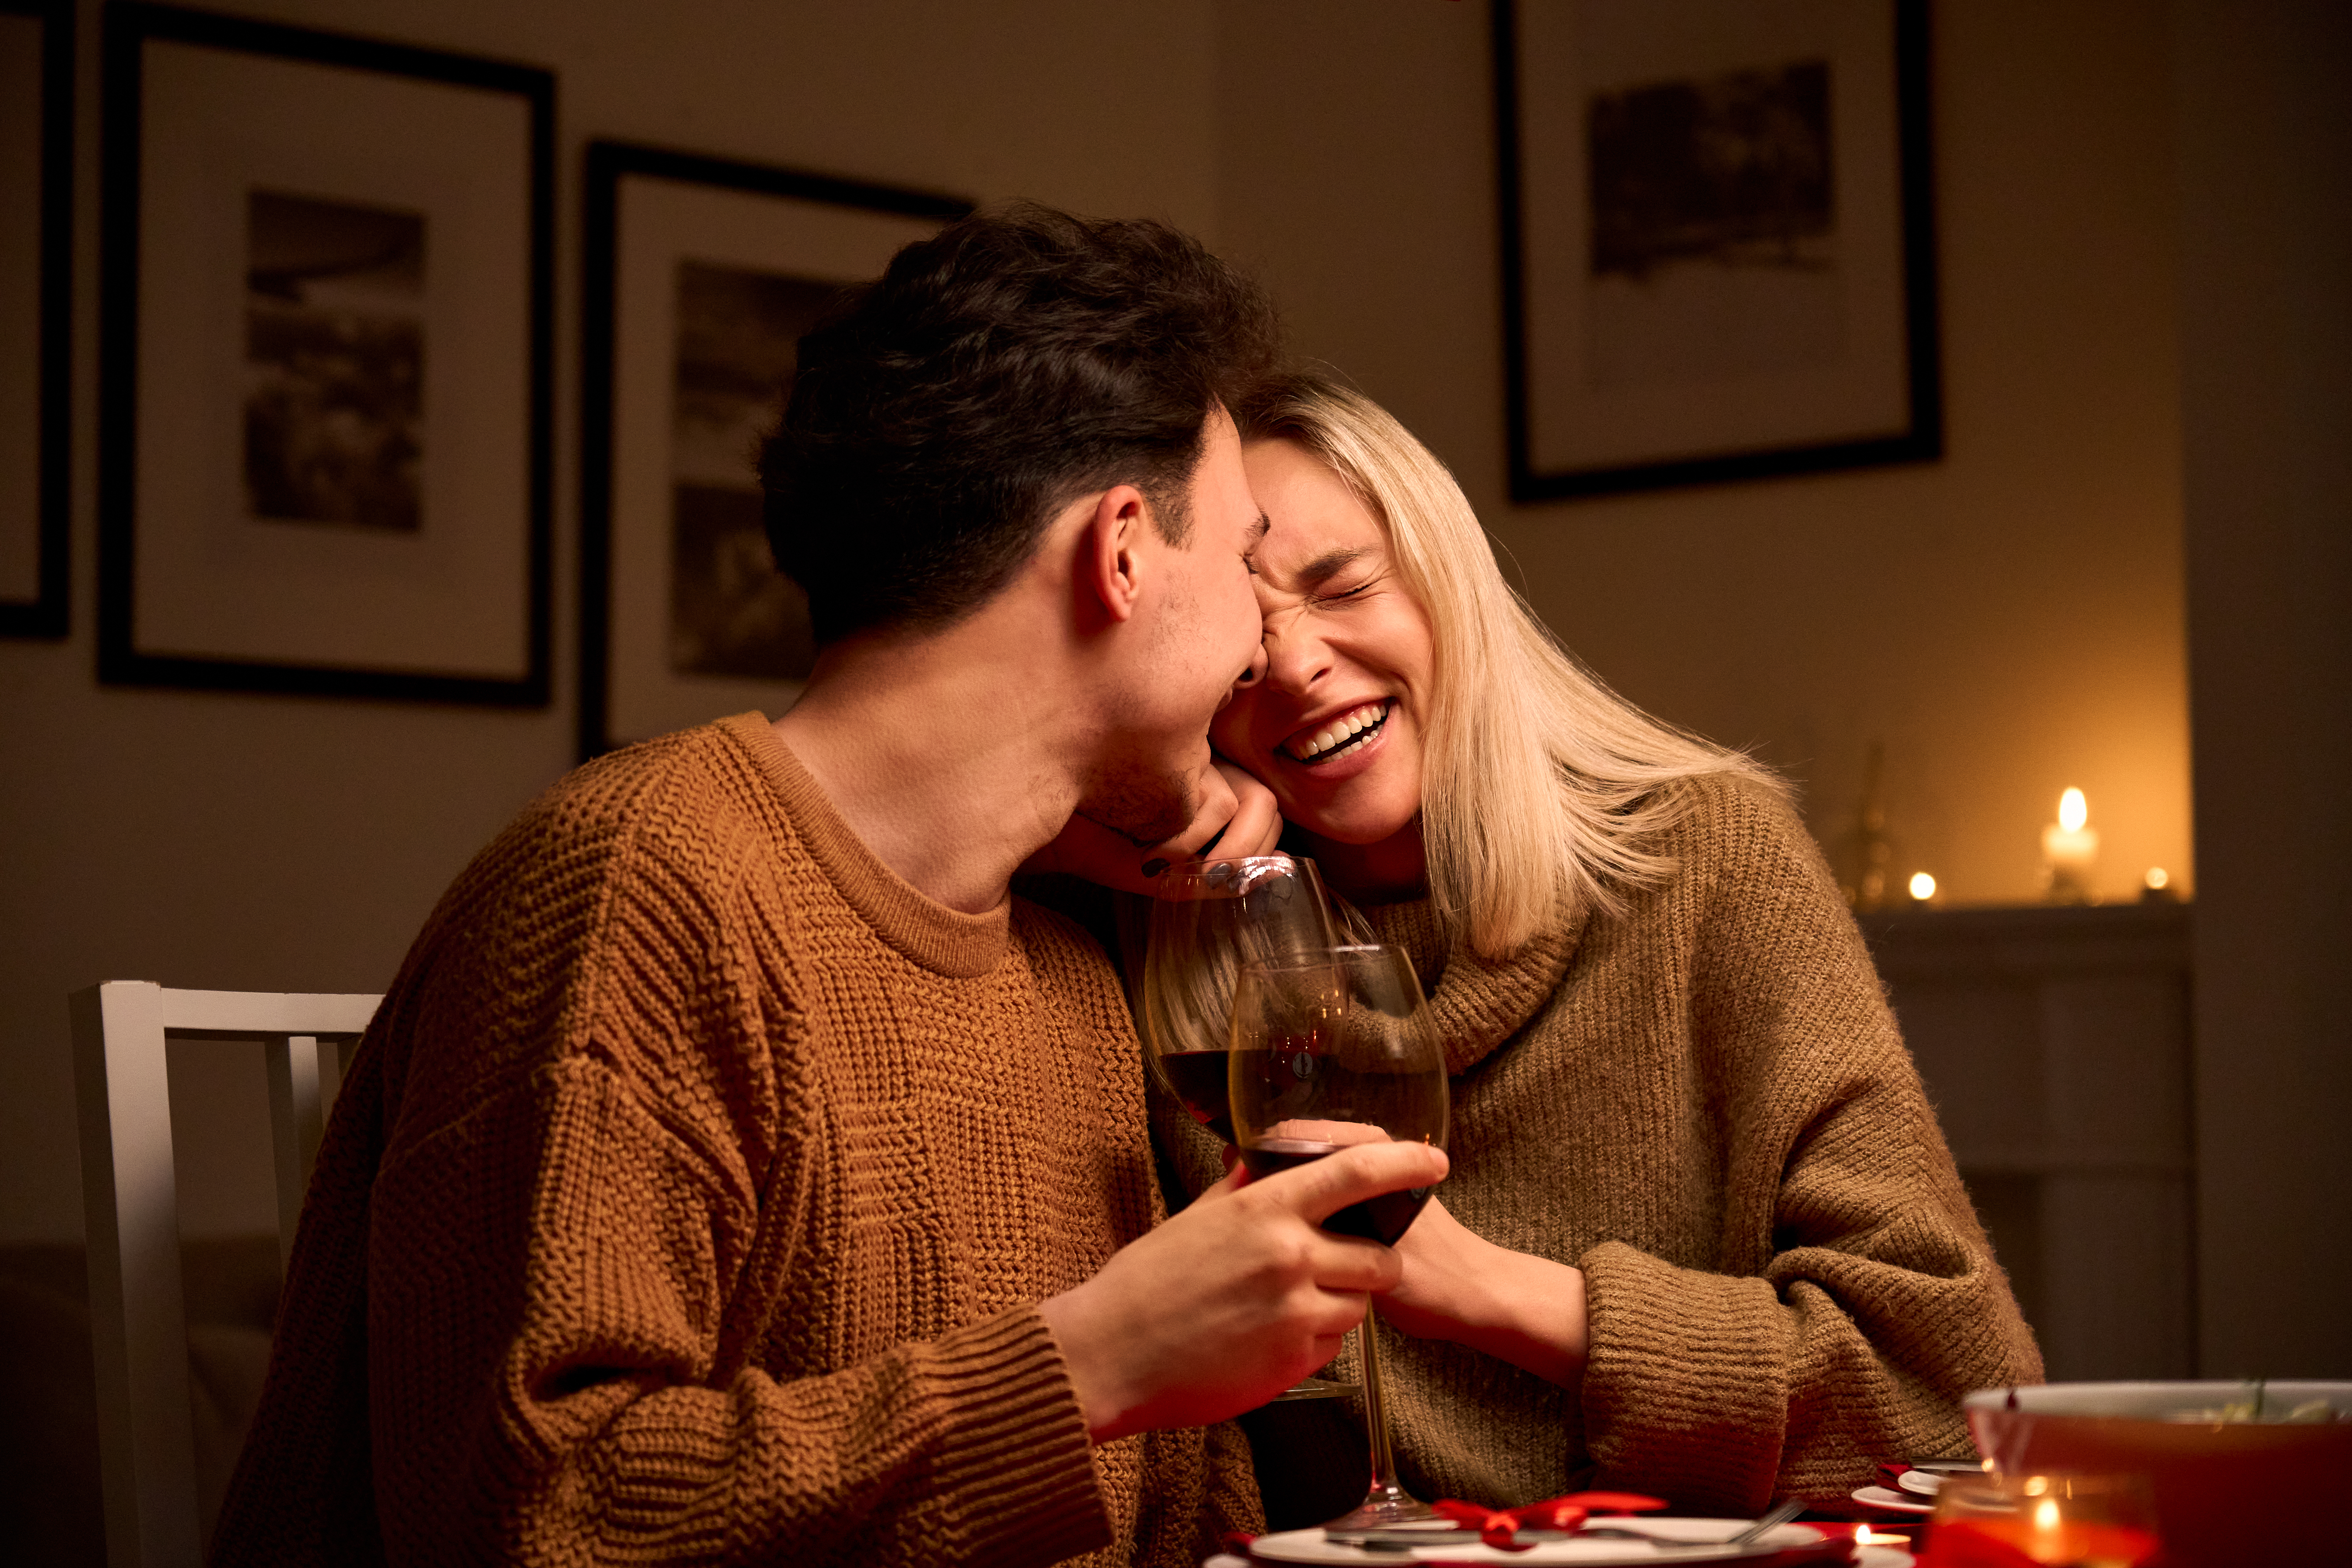 Ein lachendes Paar am Esstisch | Quelle: Getty Images